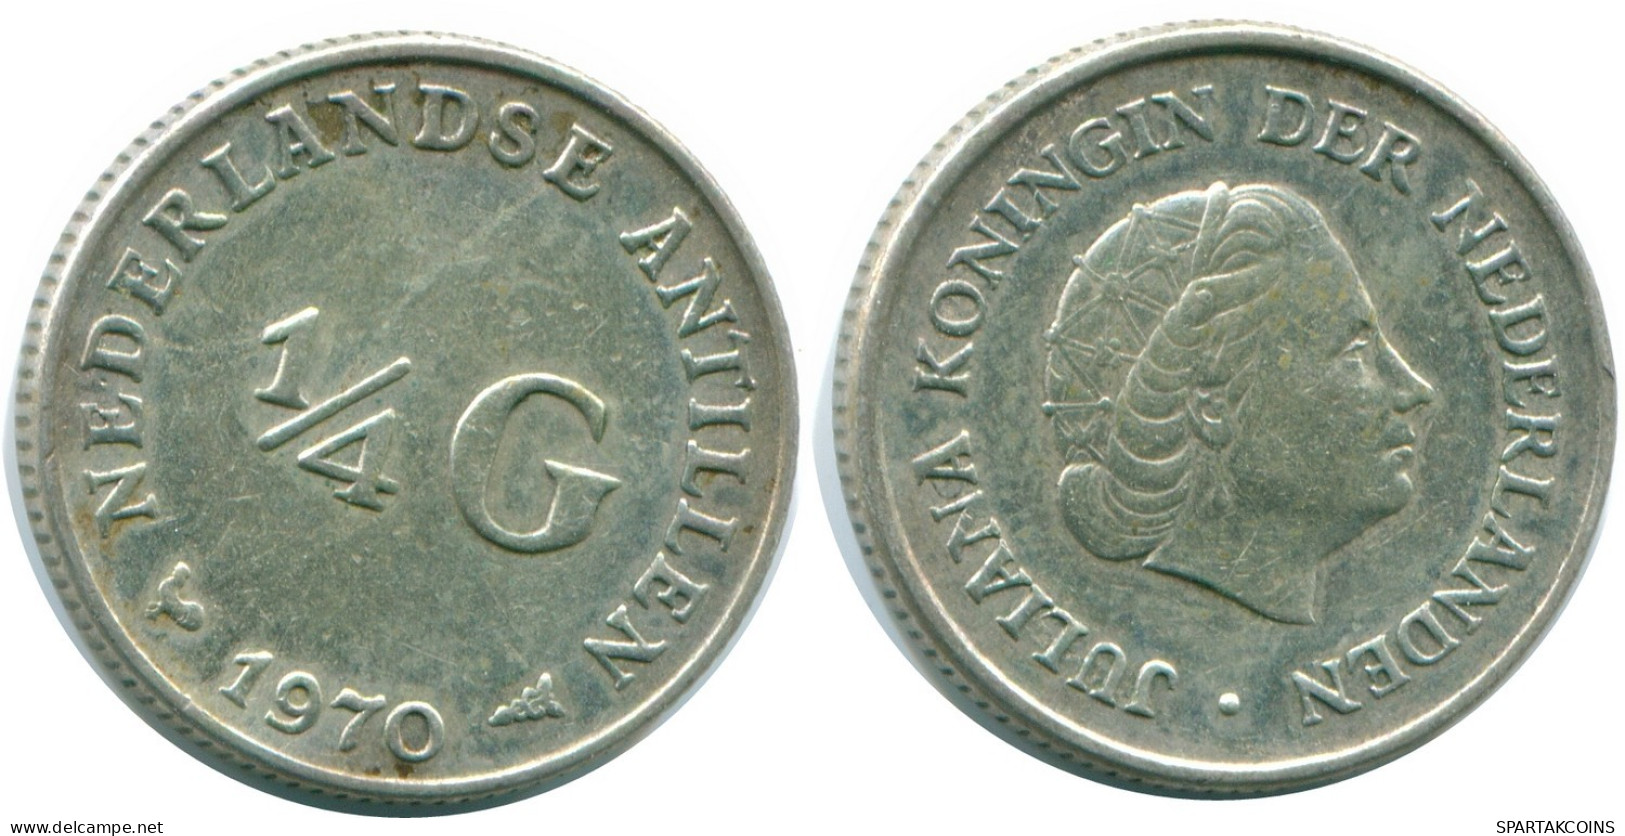 1/4 GULDEN 1970 NIEDERLÄNDISCHE ANTILLEN SILBER Koloniale Münze #NL11651.4.D.A - Niederländische Antillen